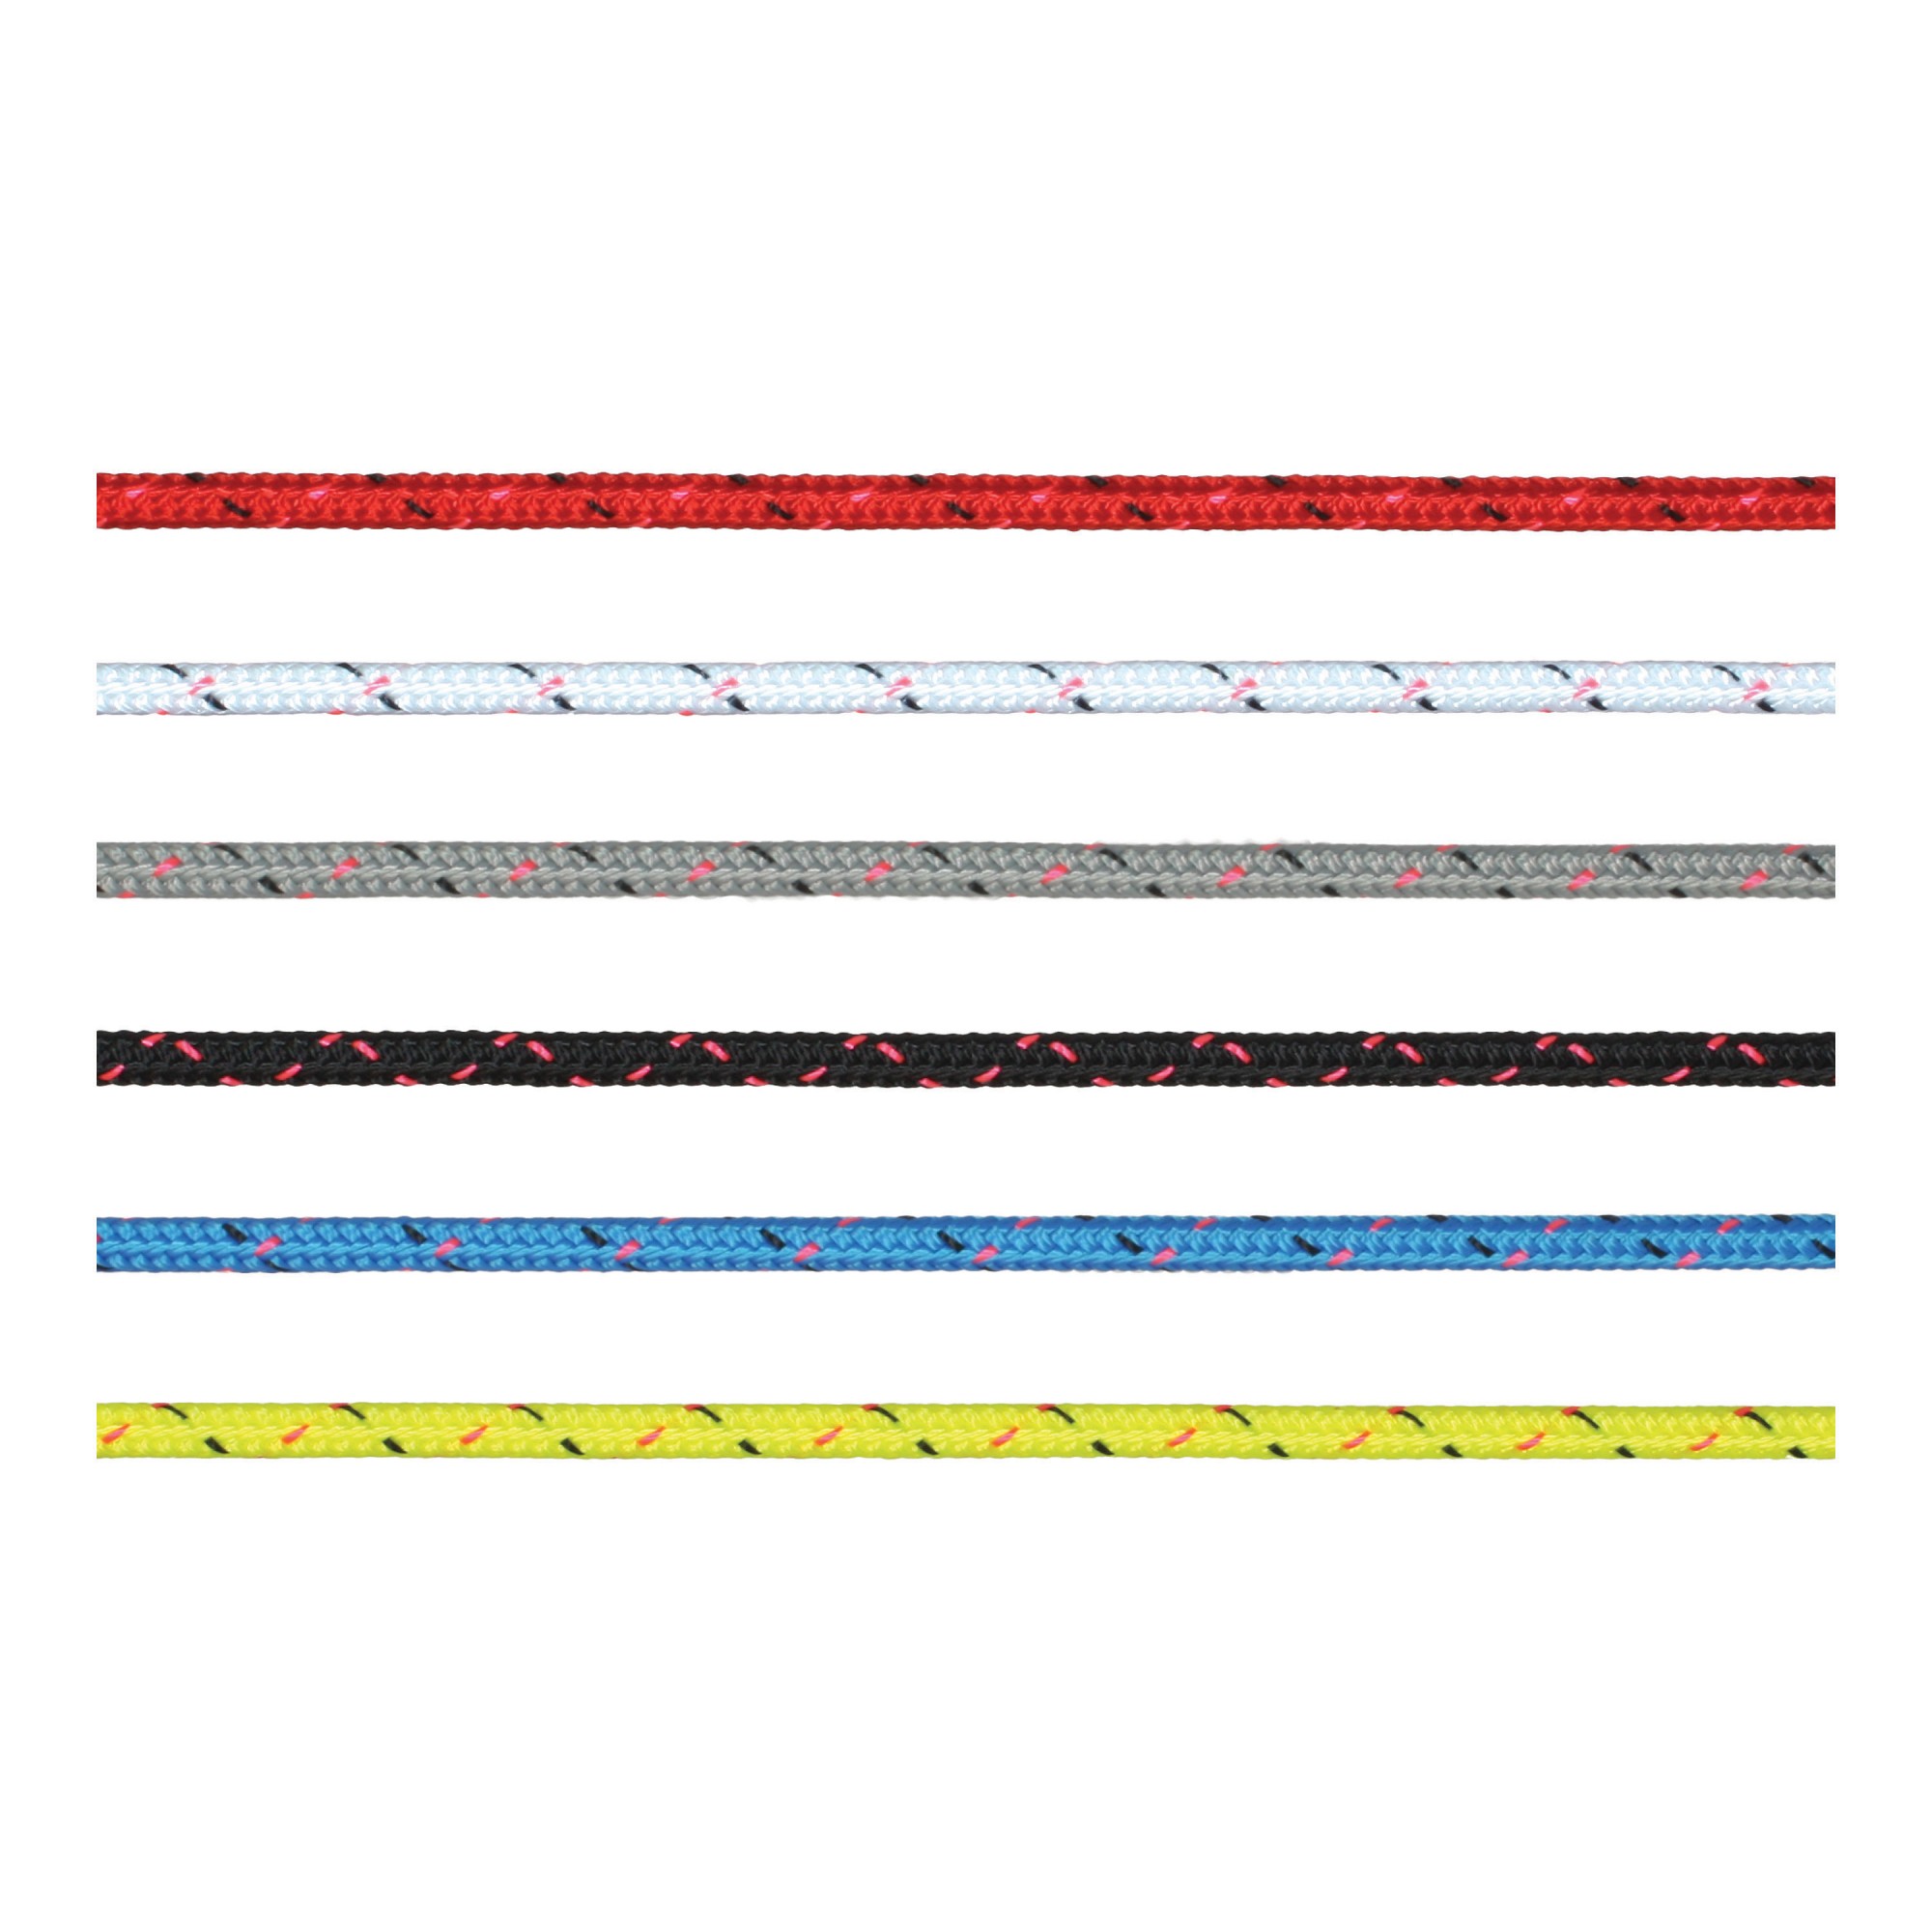 Трос Marlow Excel Pro из полиэстера красного цвета 200 м диаметр 8 мм, Osculati 06.465.08RO